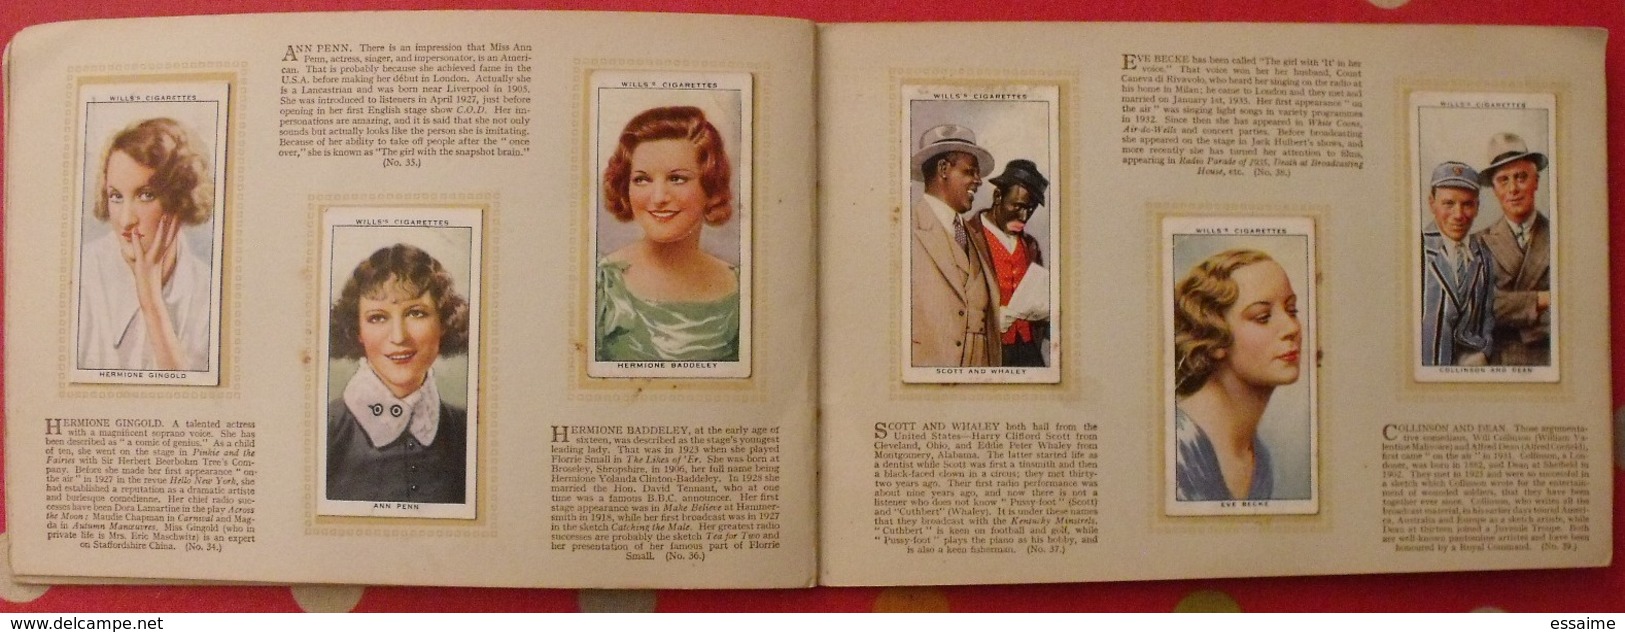 album d'images cigarette pictures card wills's. en anglais. radio celebrities célébrités. 1935. 50 chromo